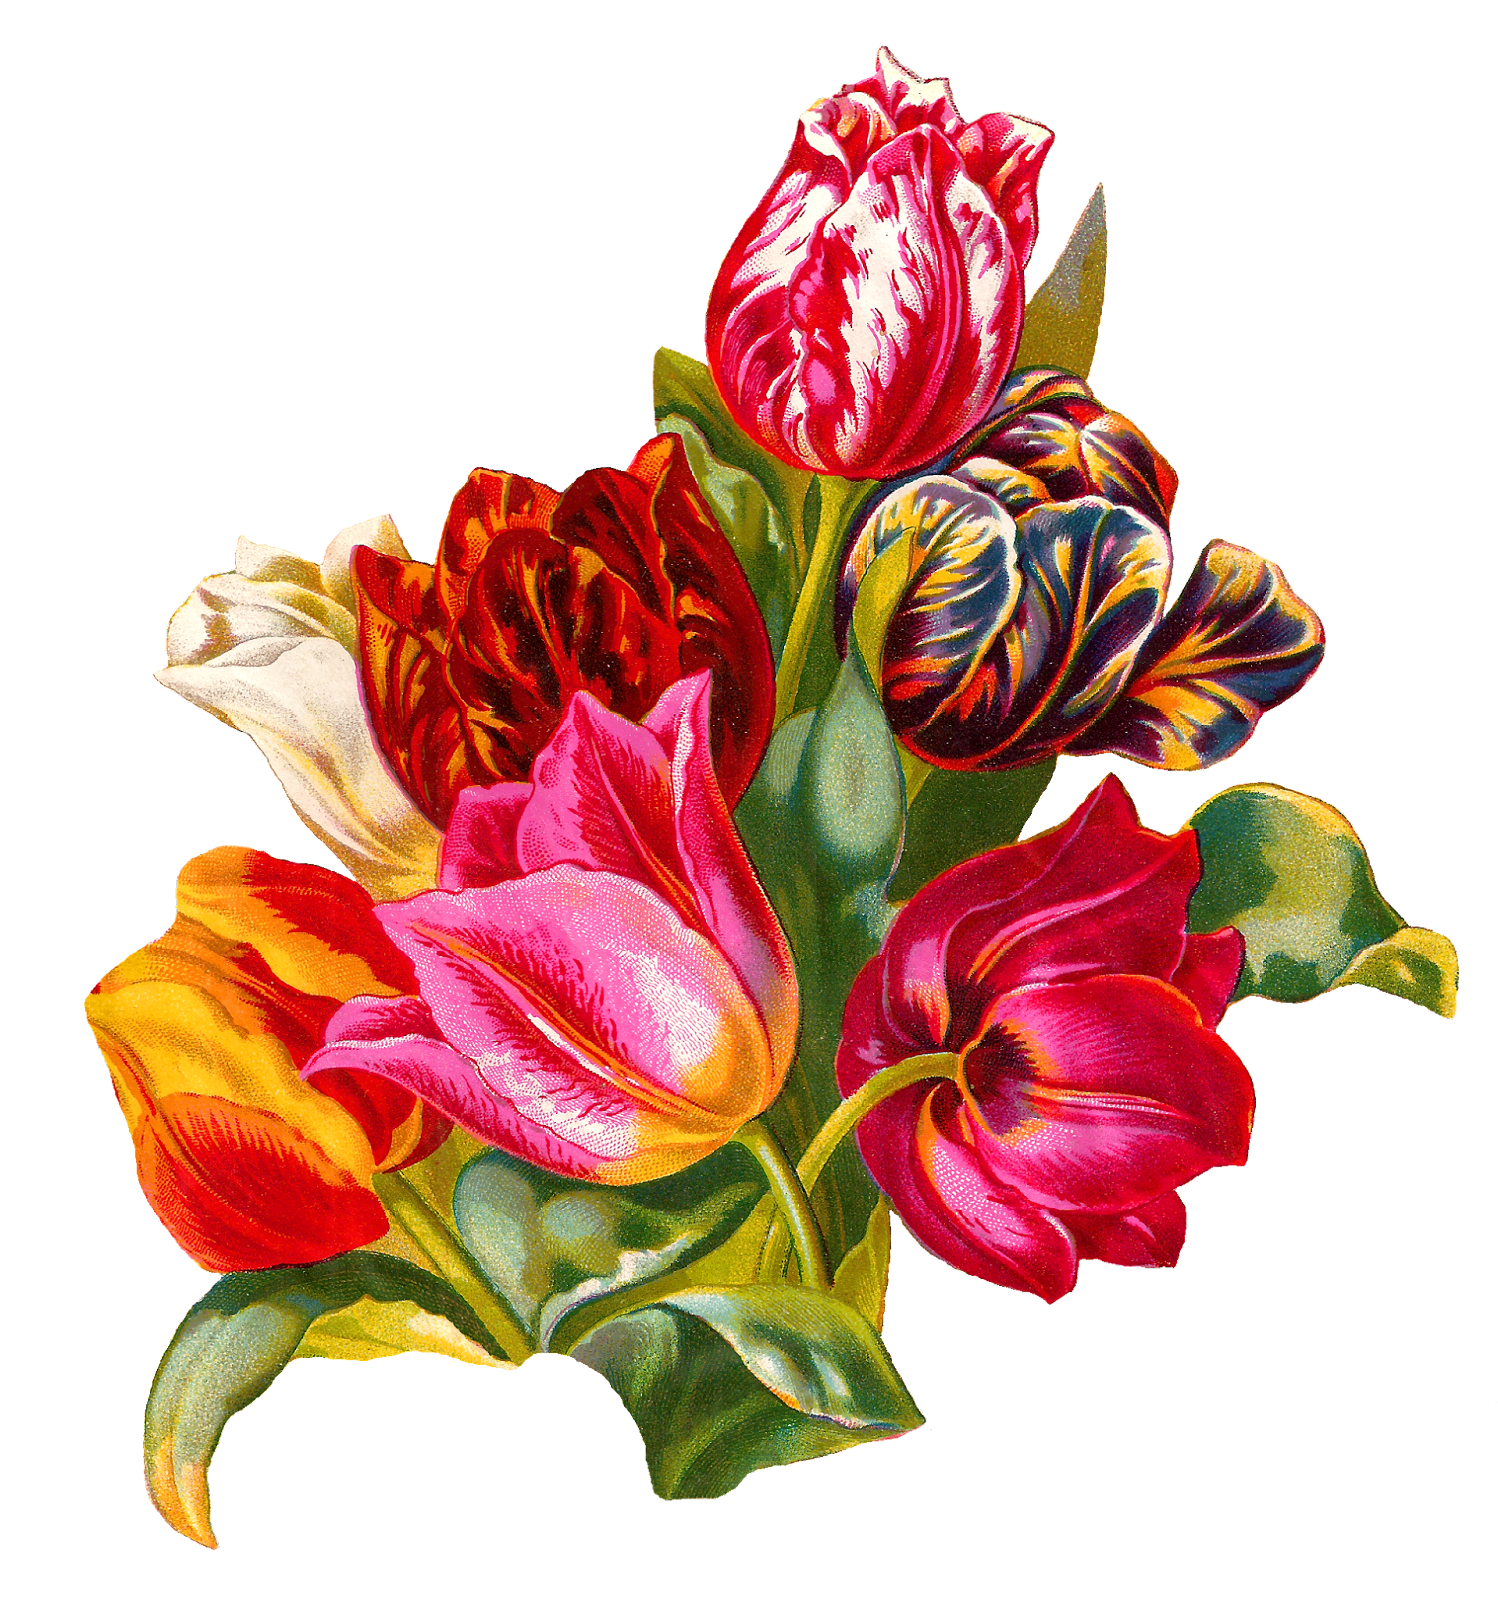 antique-images-botanical-artwork-tulip-flower-digital-illustration